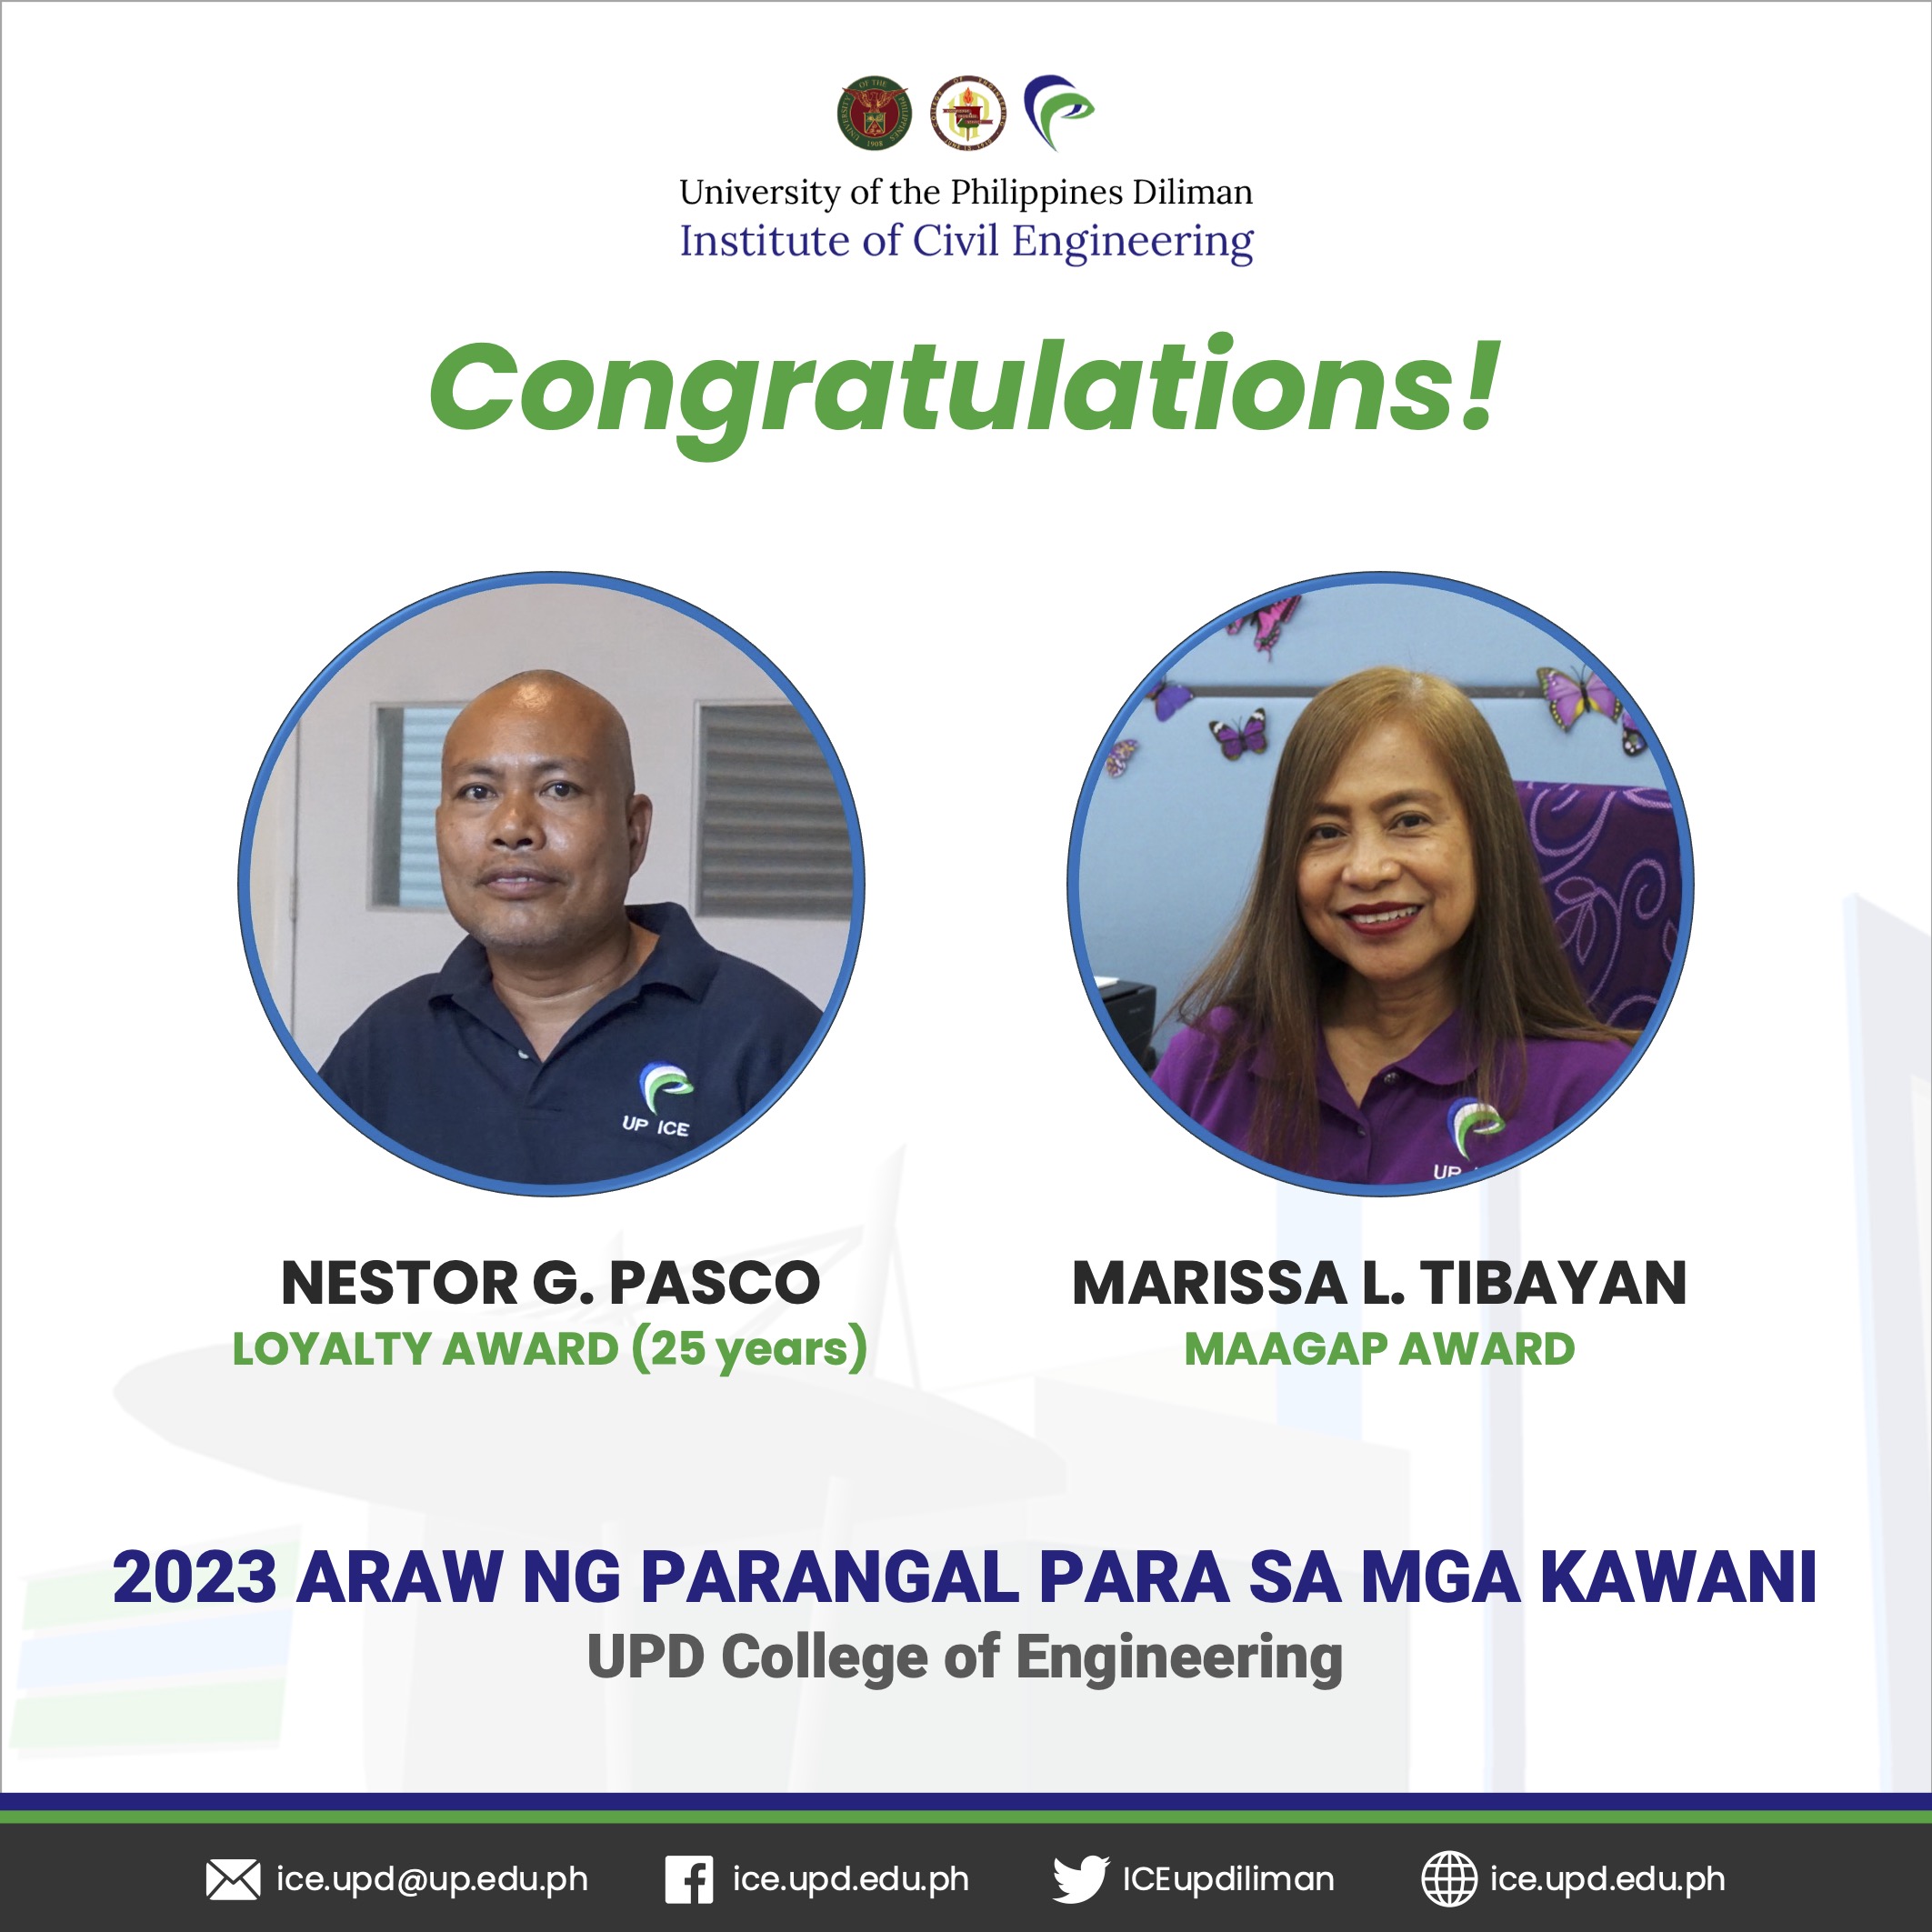 Pasco and Tibayan, UP ICE Staff members, received awards in 2023 Araw ng Parangal para sa mga Kawani